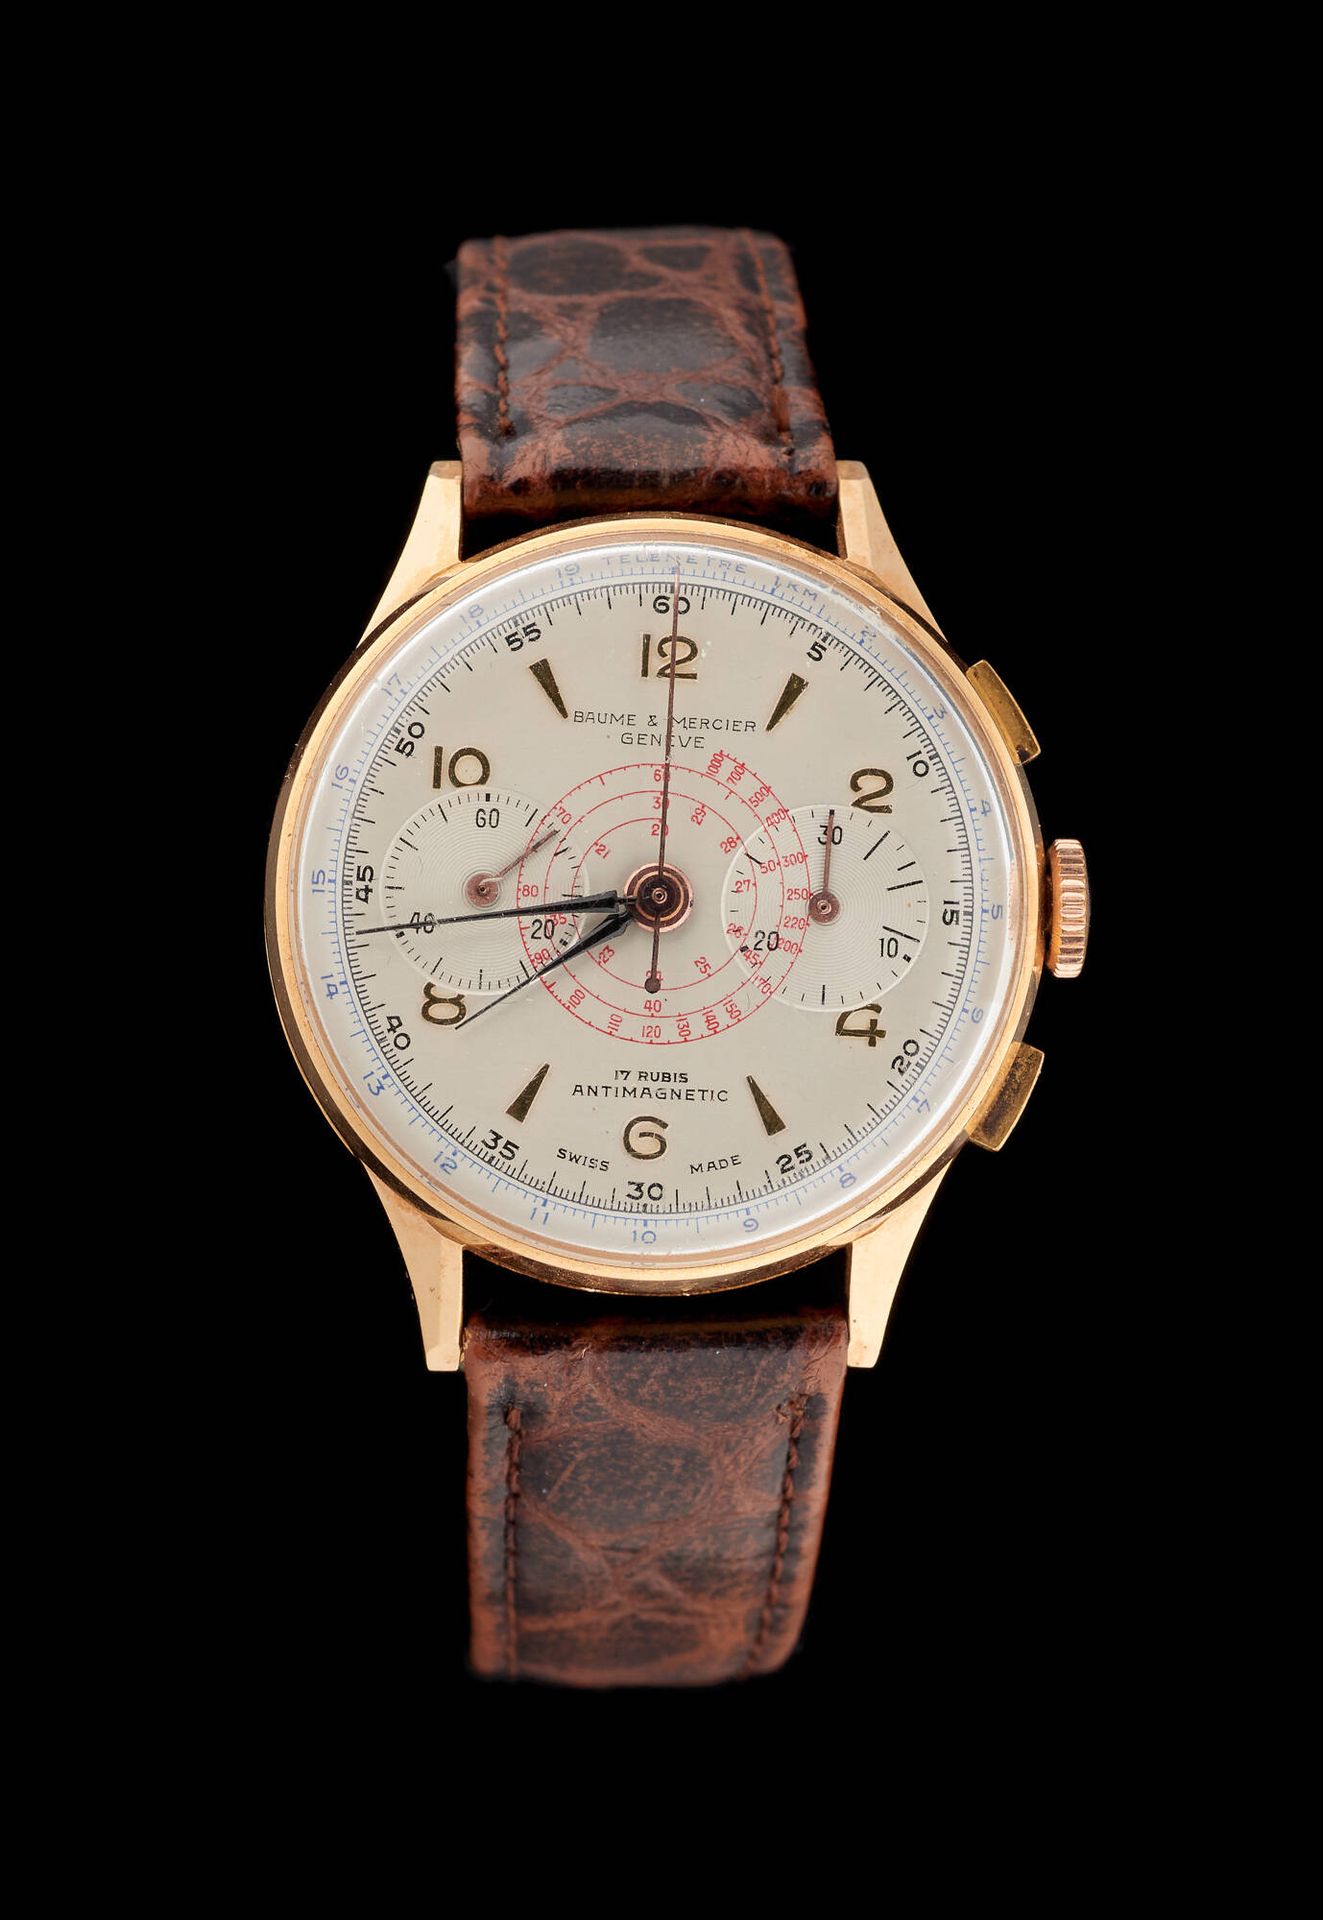 Baume & Mercier 手表：黄金男士腕表，精密计时器，防磁，17颗宝石，上链机芯。
品牌Baume & Mercier。
尺寸：直径3.8厘米。